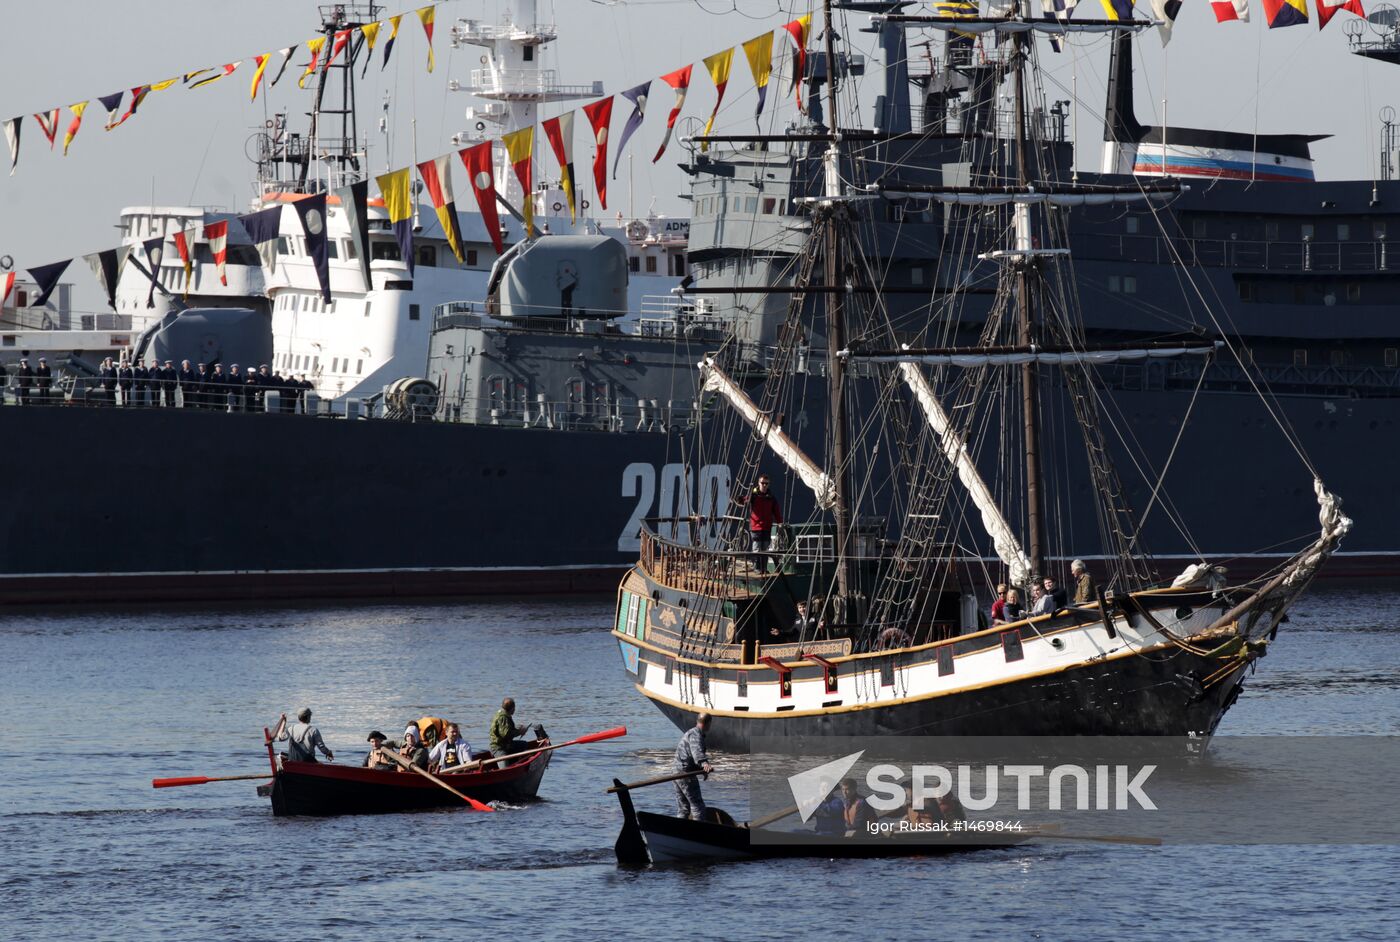 Rehearsing naval parade in Kronstadt